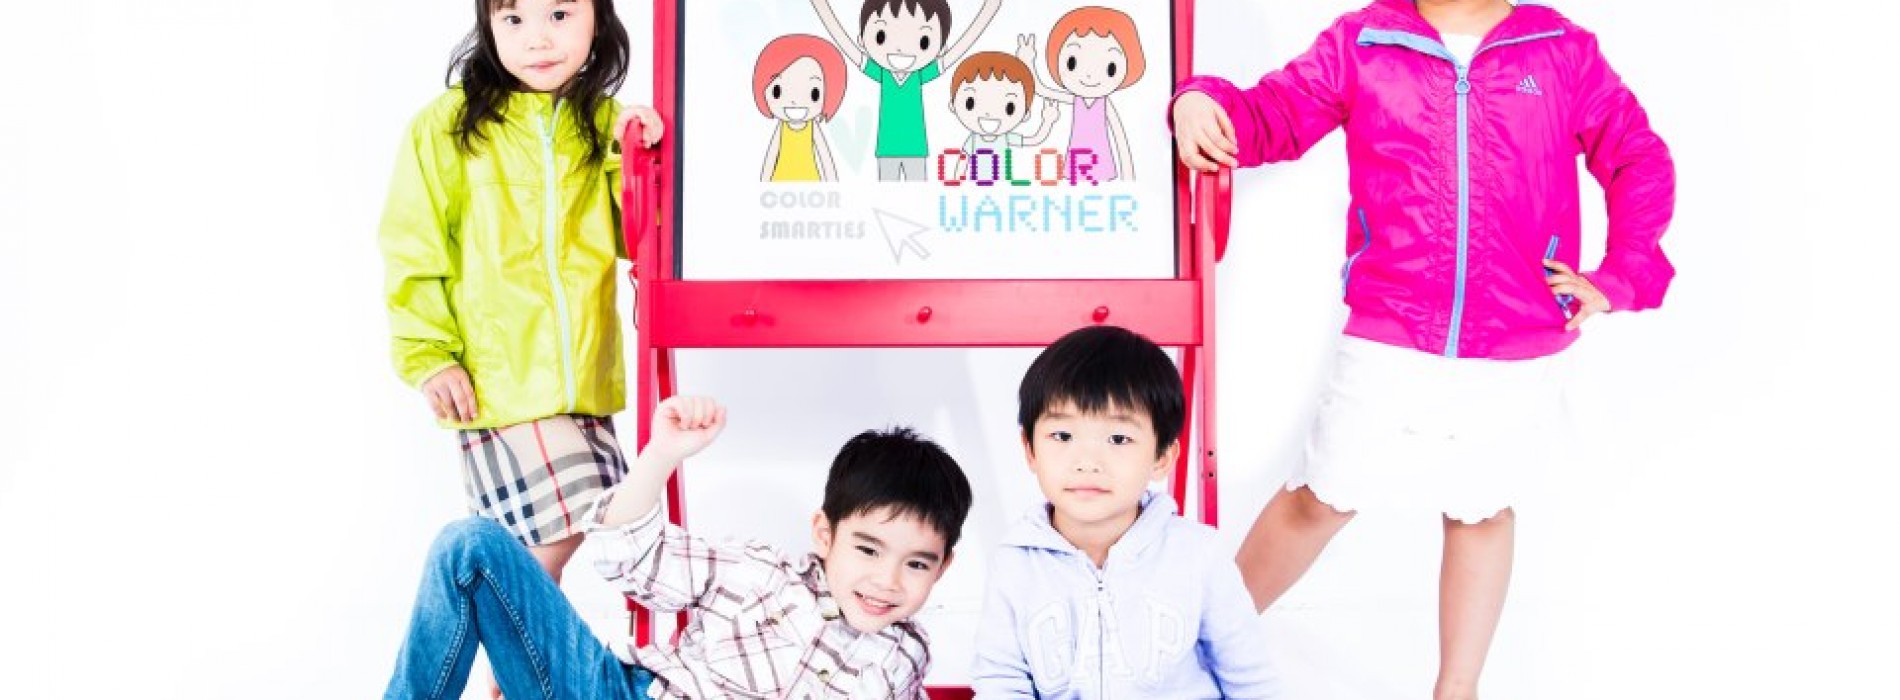 Color Warner Kids Playgroup